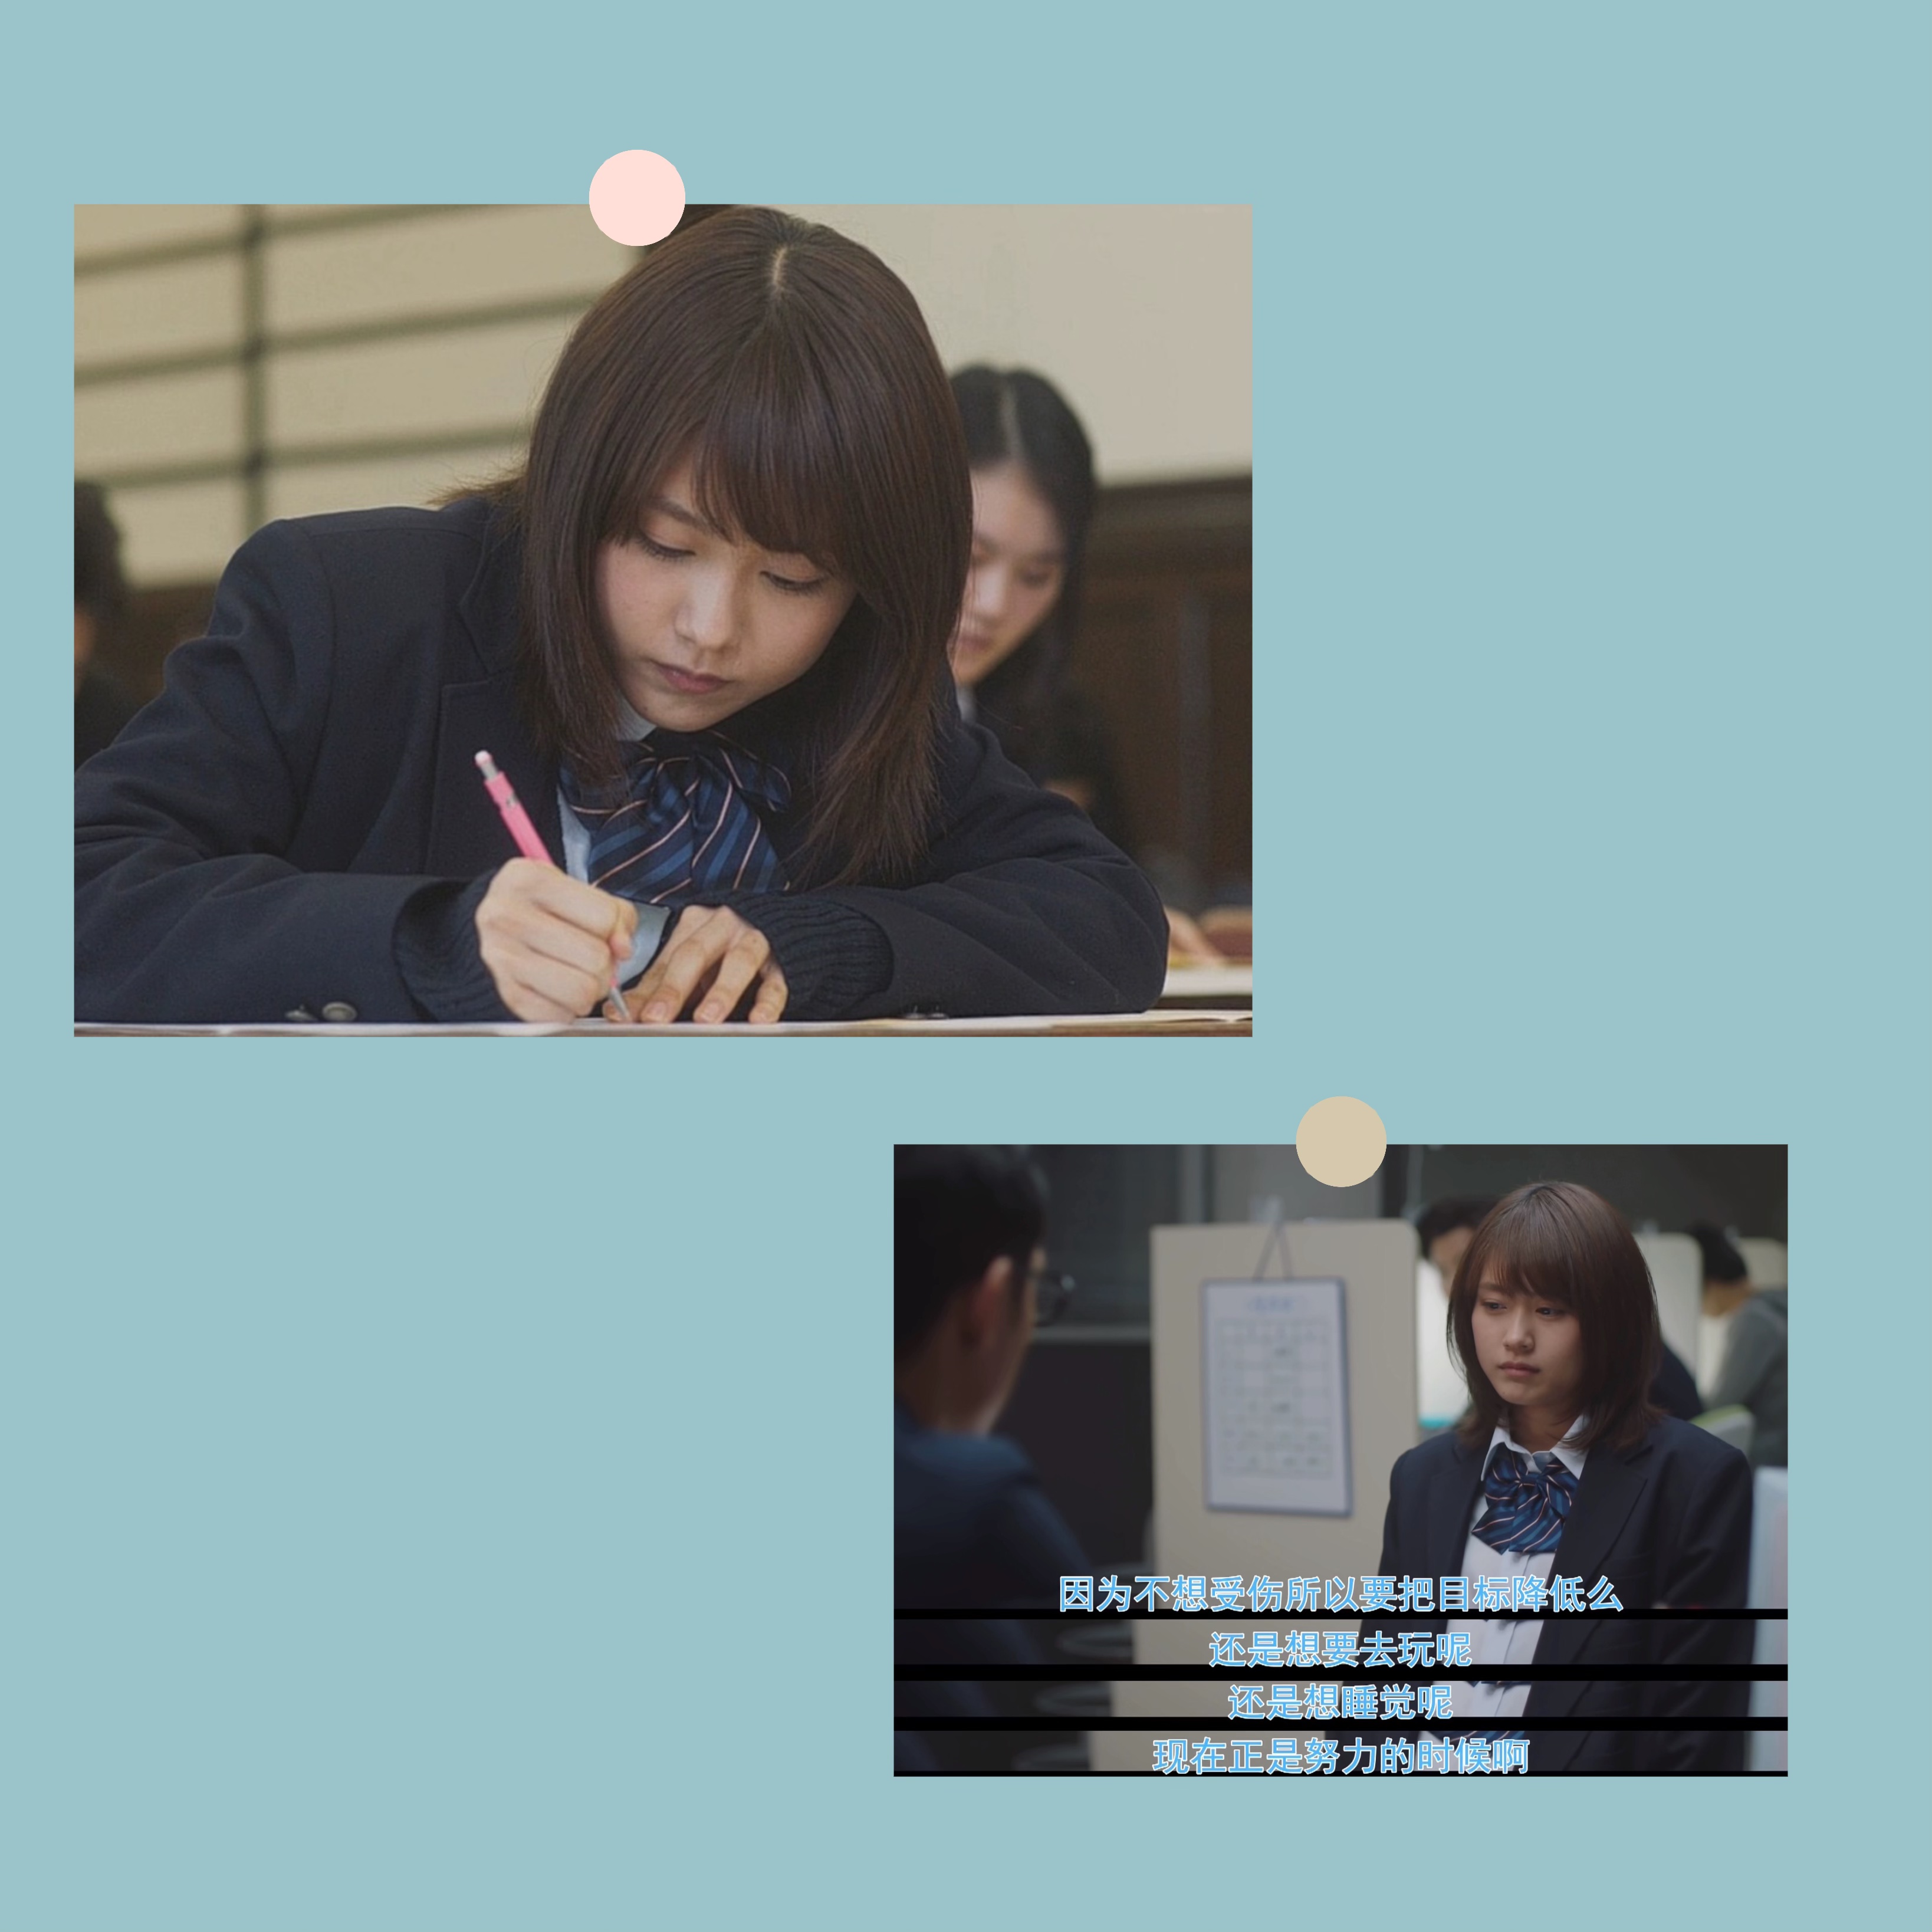 垫底辣妹日本电影励志学习高考海报周边照片桌面装饰画明信片墙贴